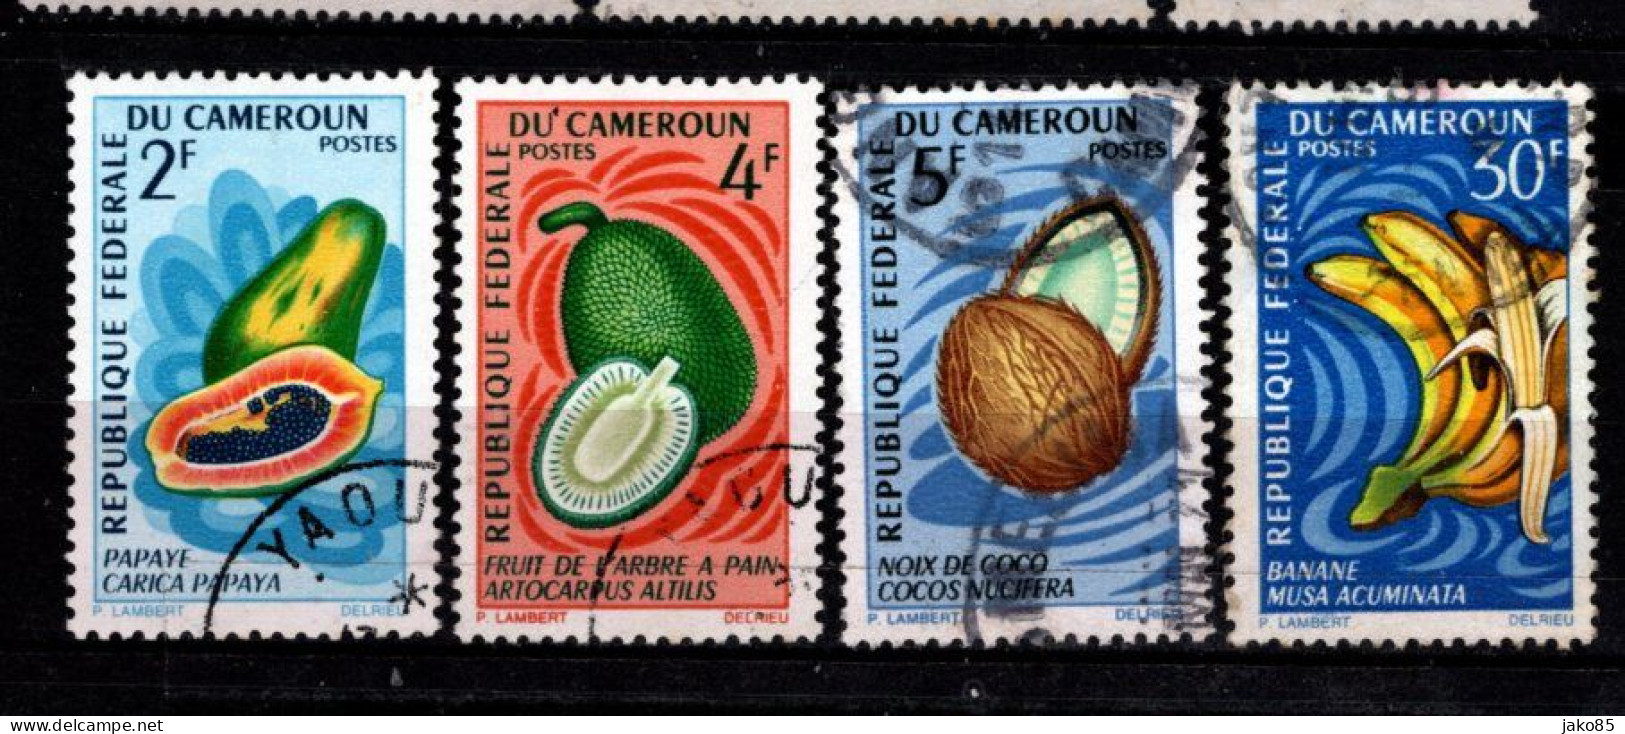 - CAMEROUN -1967 - YT N° 442 + 444 / 445 + 448 - Oblitérés - Fruits - Cameroun (1960-...)